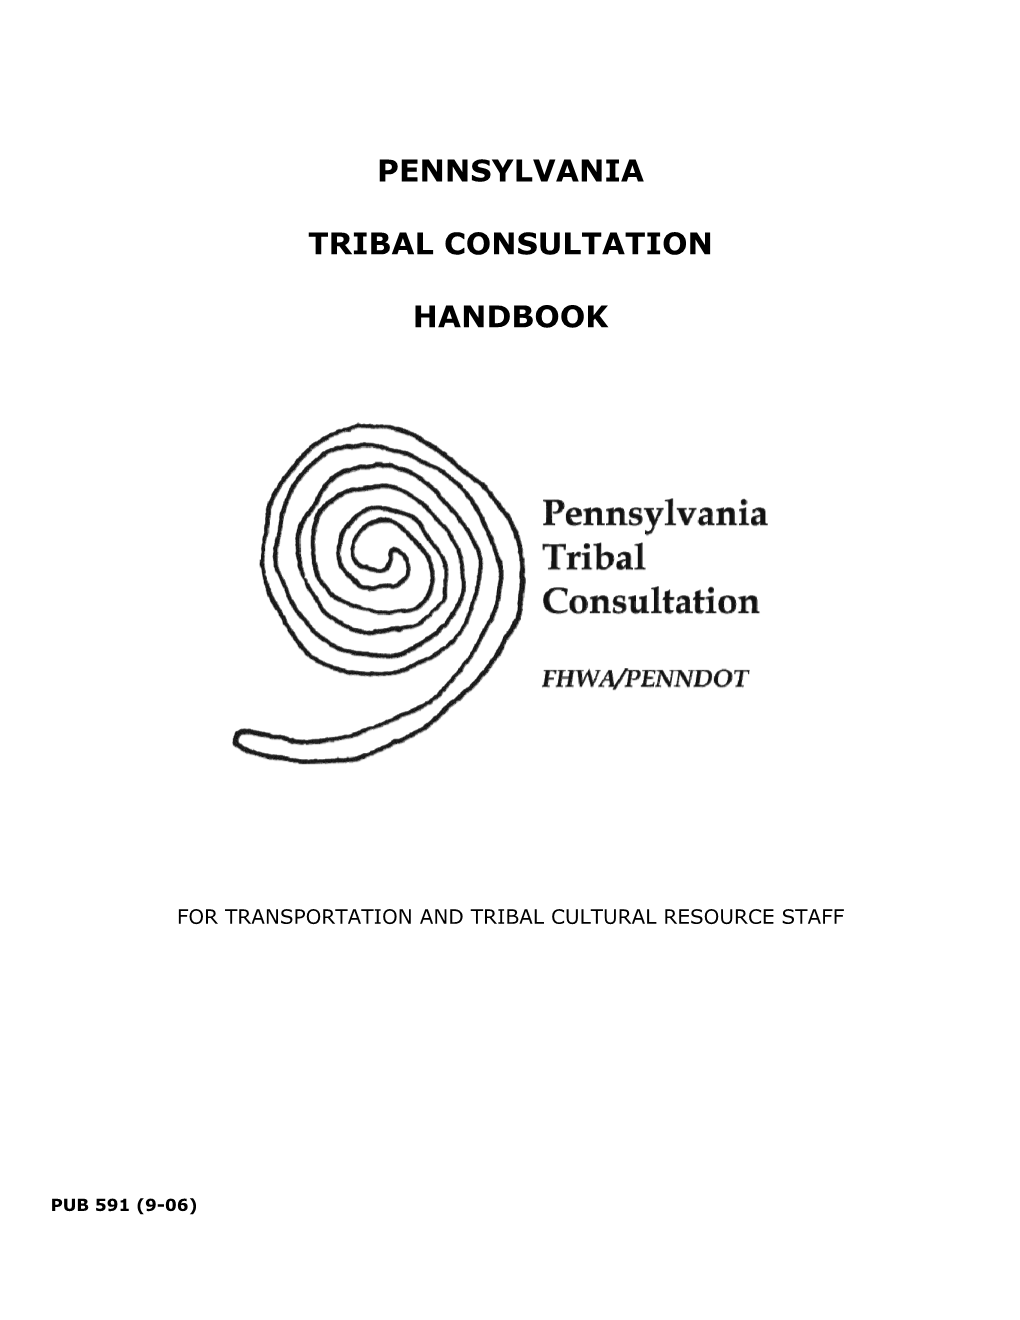 Pennsylvania Tribal Consultation Handbook